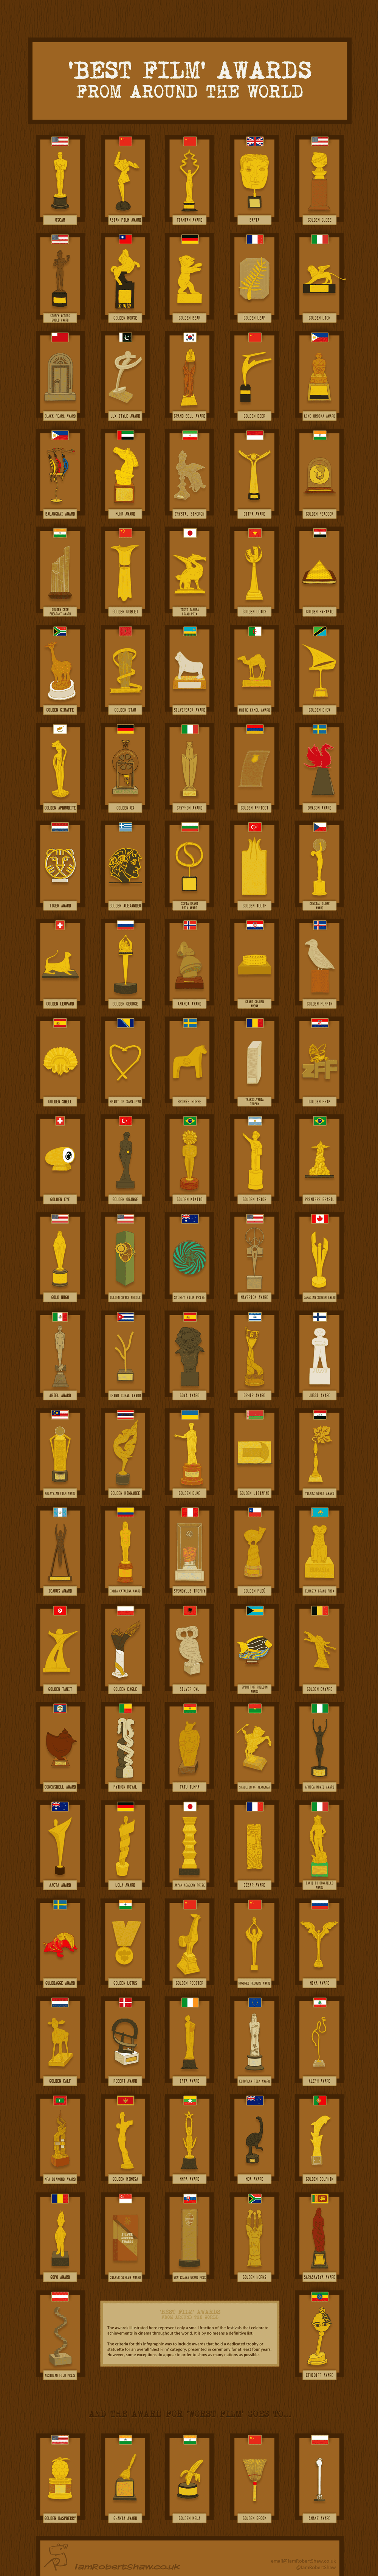 أهم جوائز الأفلام في العالم - انفو